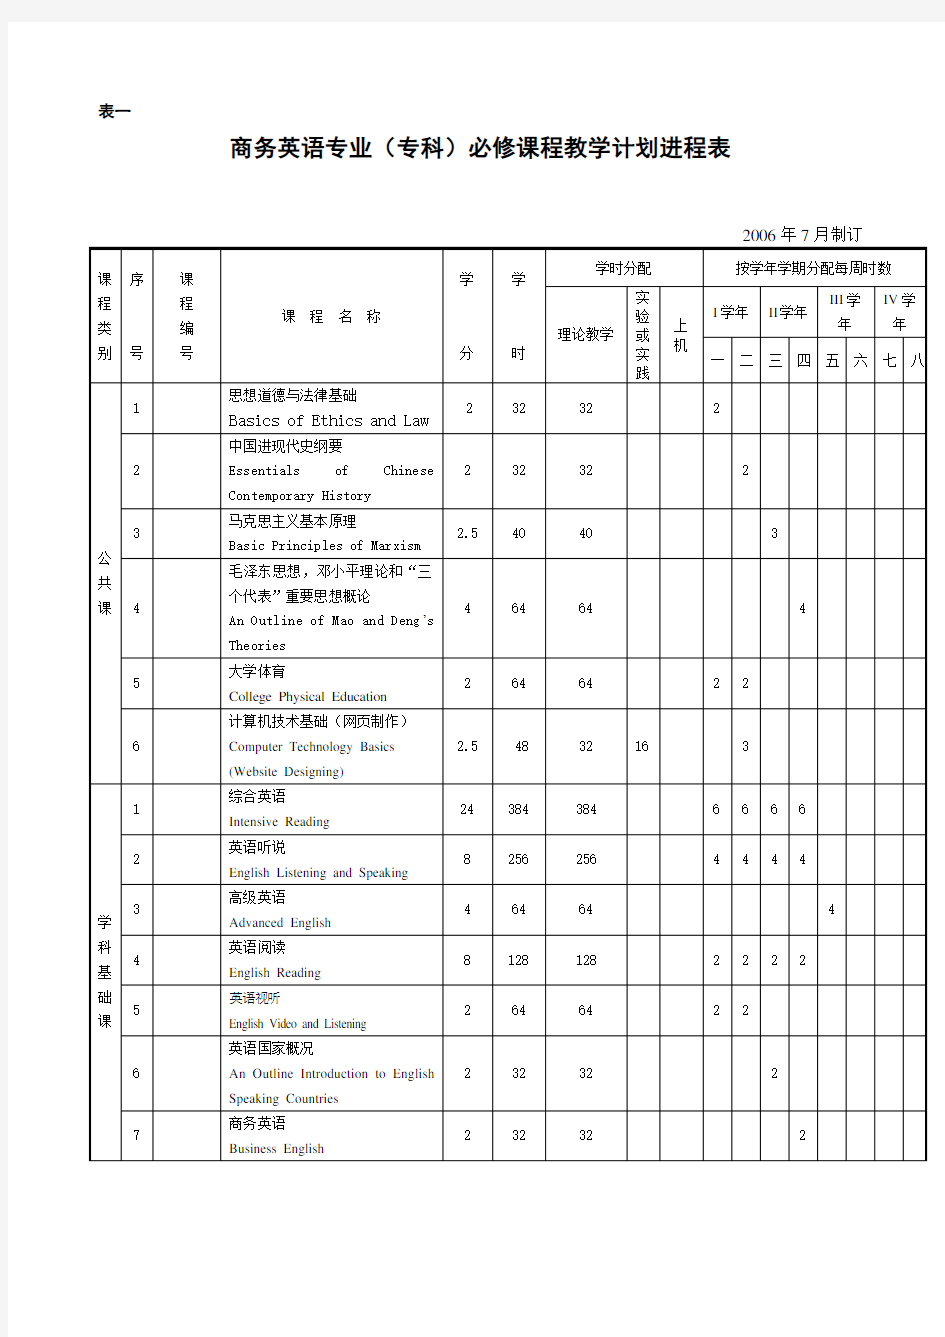 商务英语专业(专科)必修课程教学计划进程表